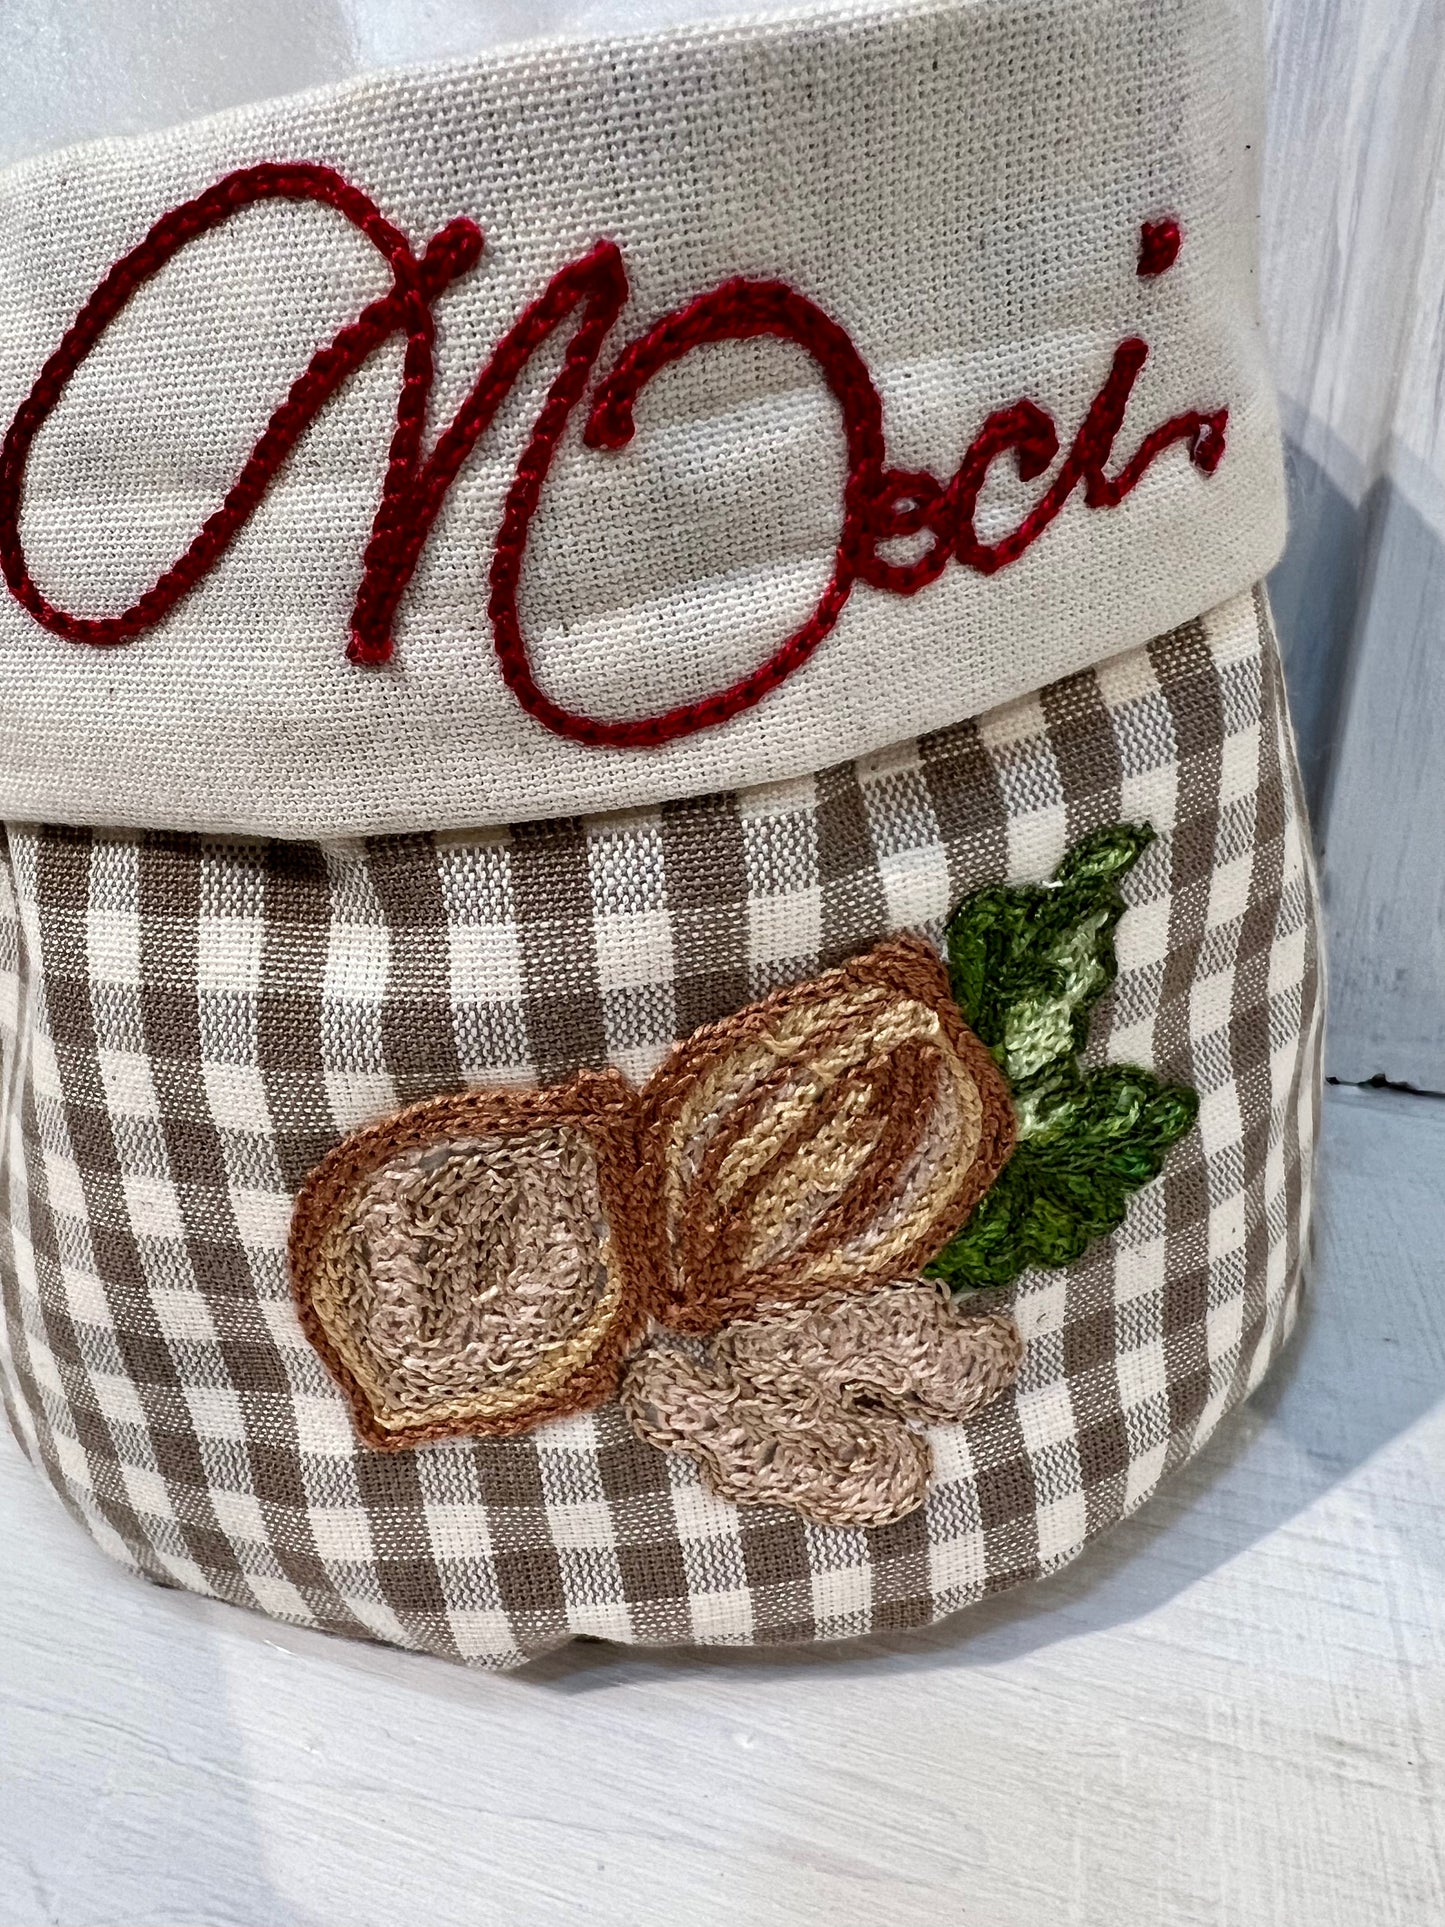 Cestino per la frutta secca - Fatto a mano con decorazione personalizzabile - Piacevolmente Country di Rosi Maria Cristina